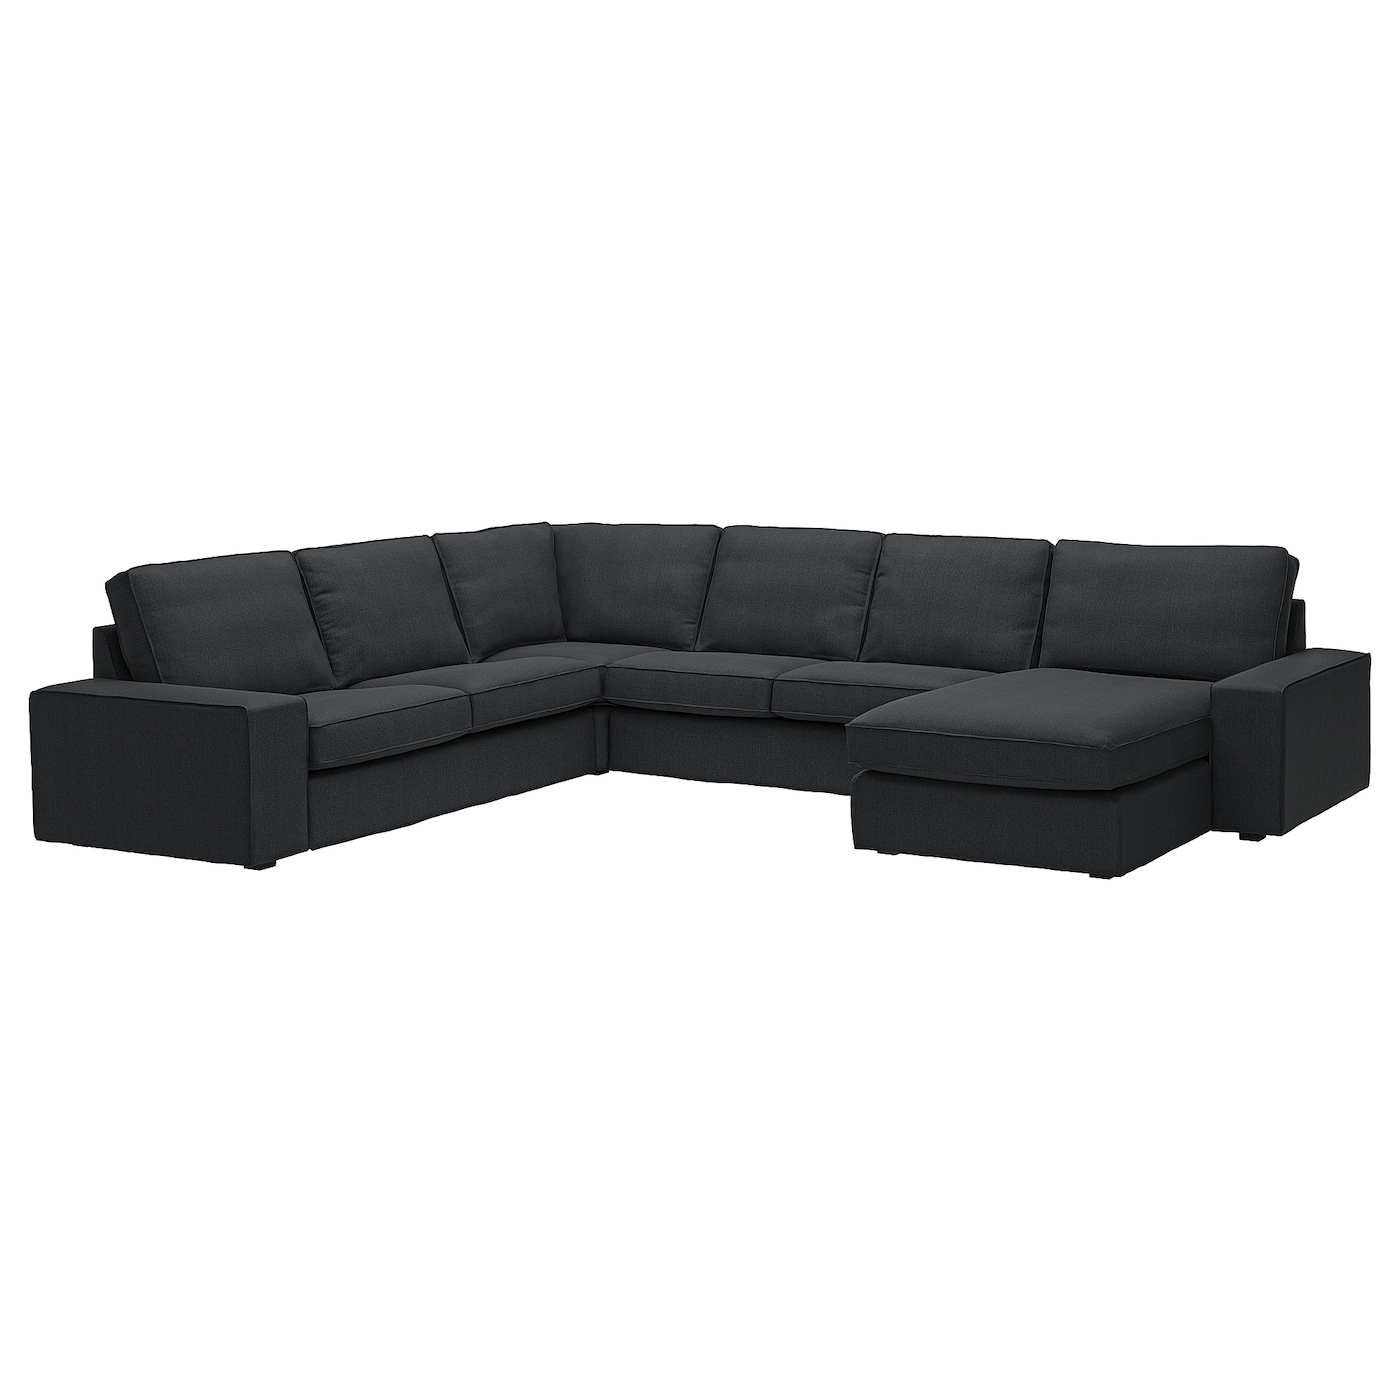 4-местный угловой диван и кушетка - IKEA KIVIK, 83x95x257/347см, черный, КИВИК ИКЕА